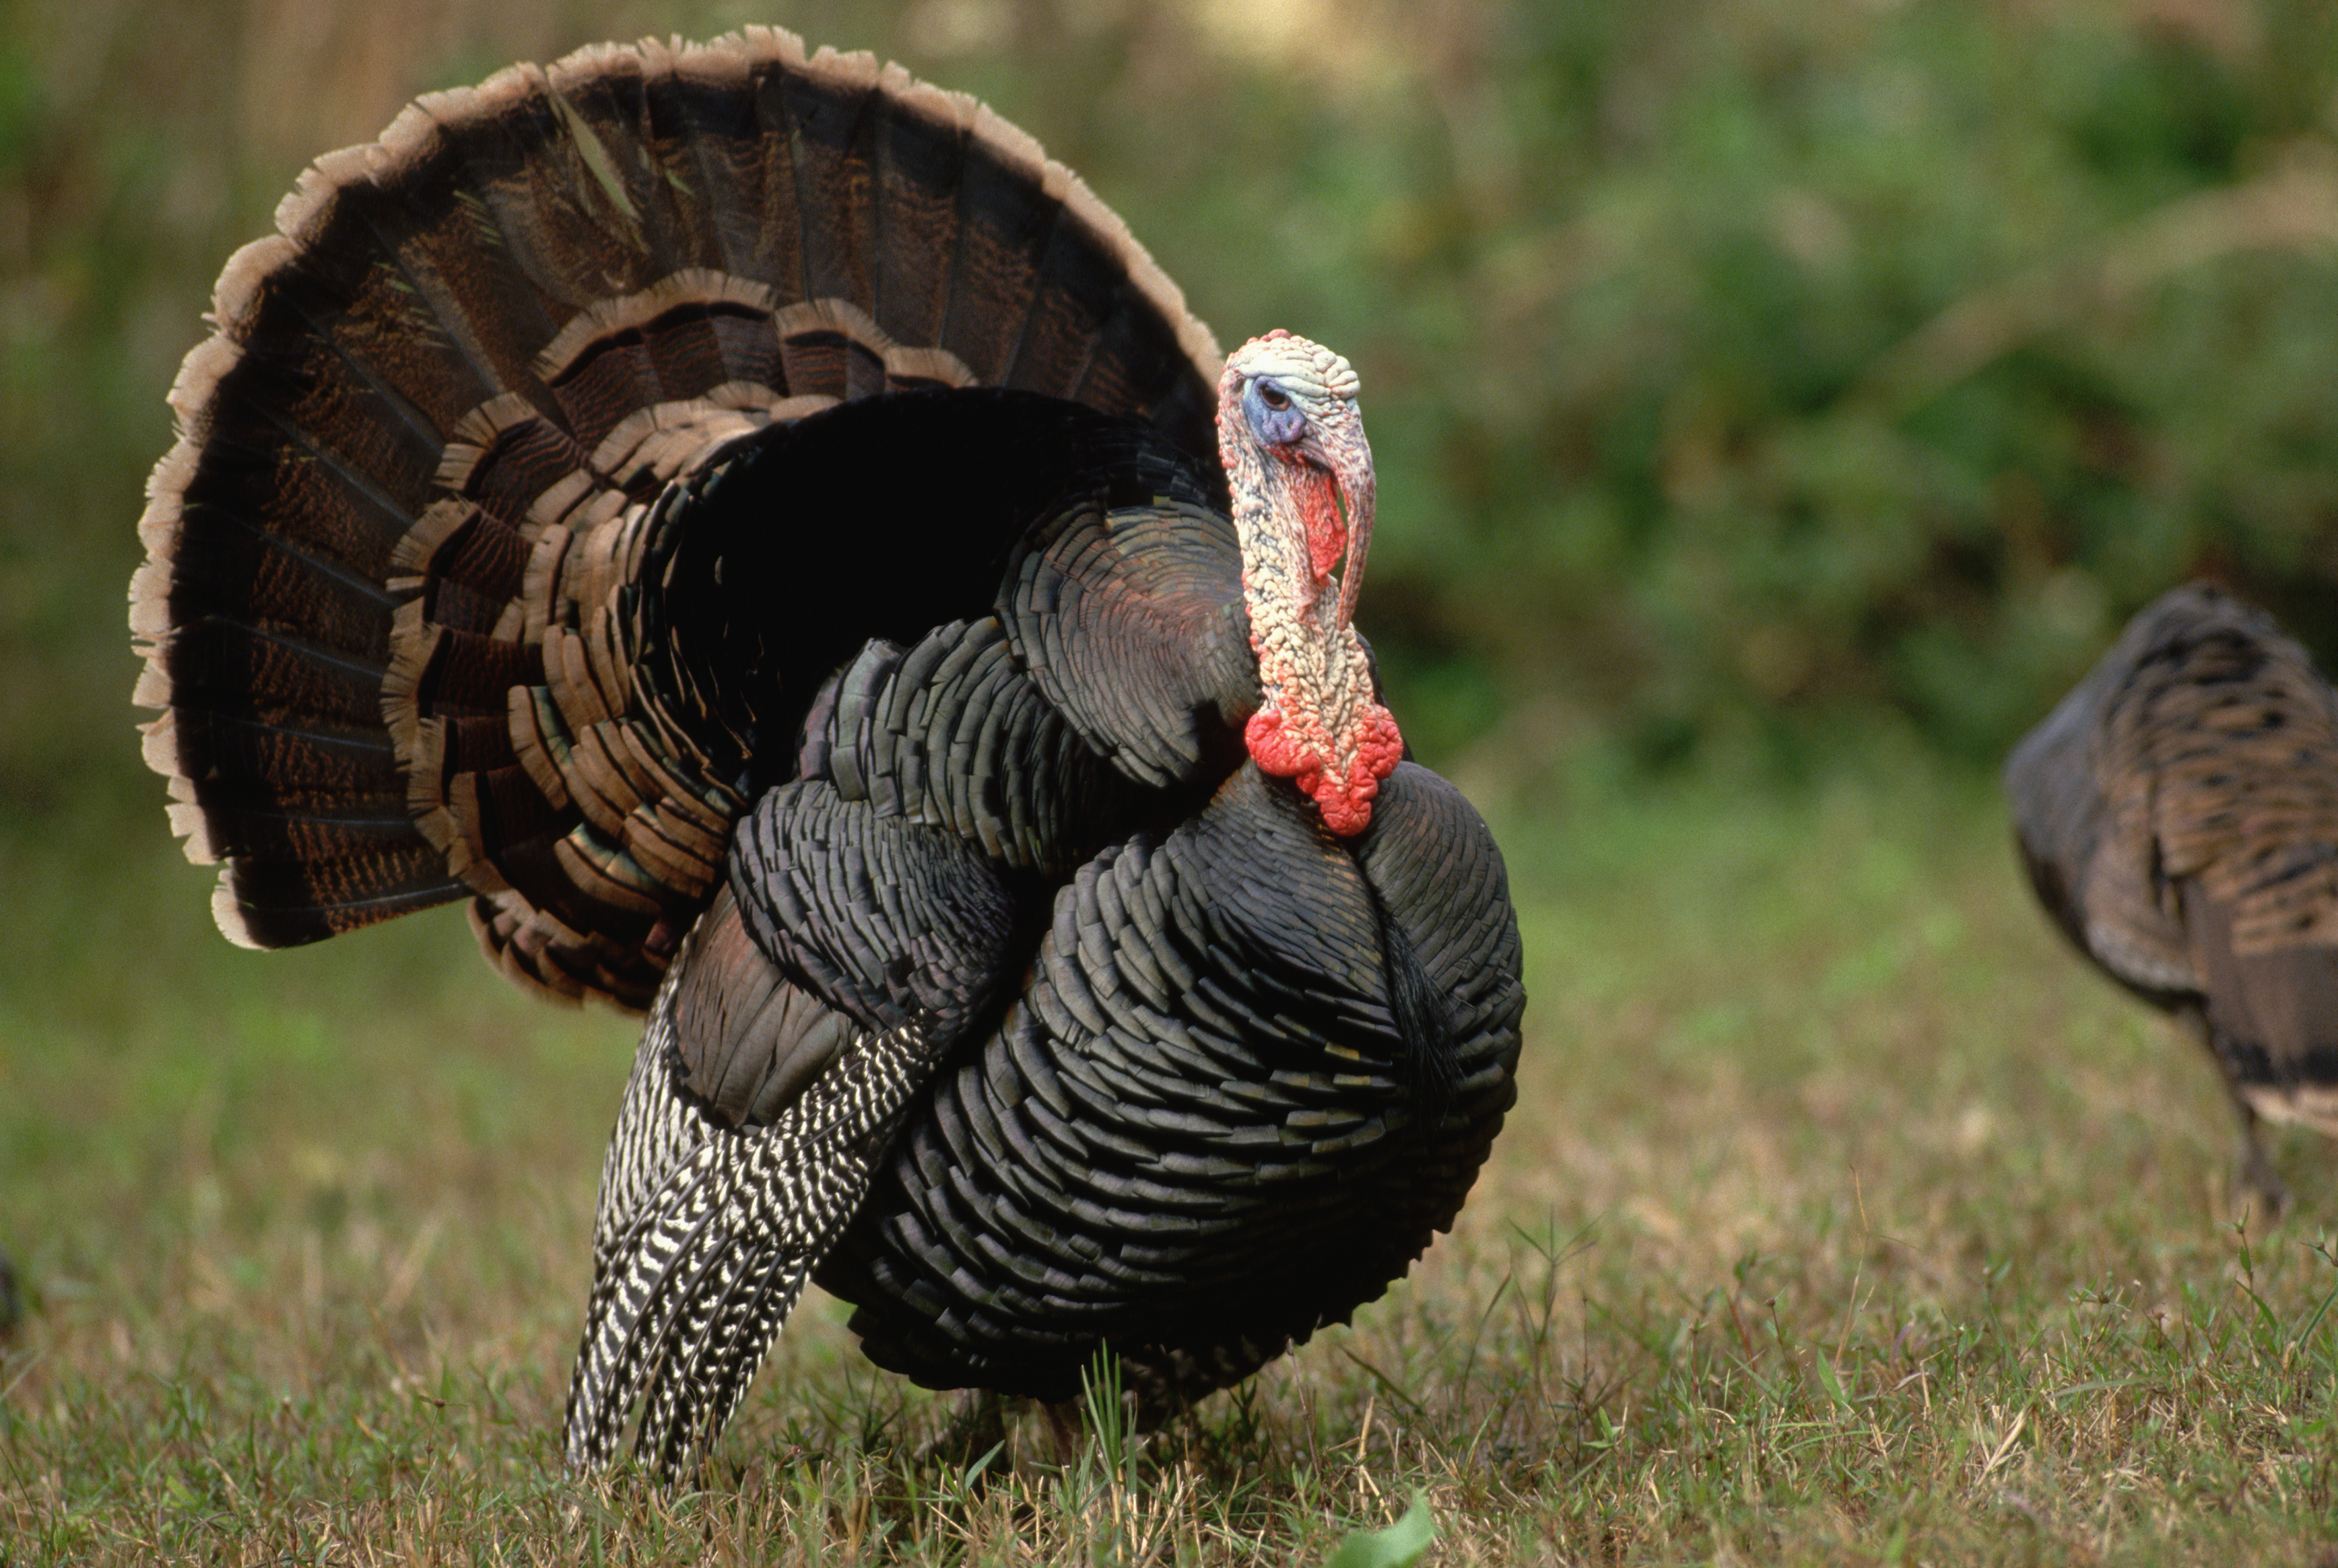 Wild turkey in courtship display